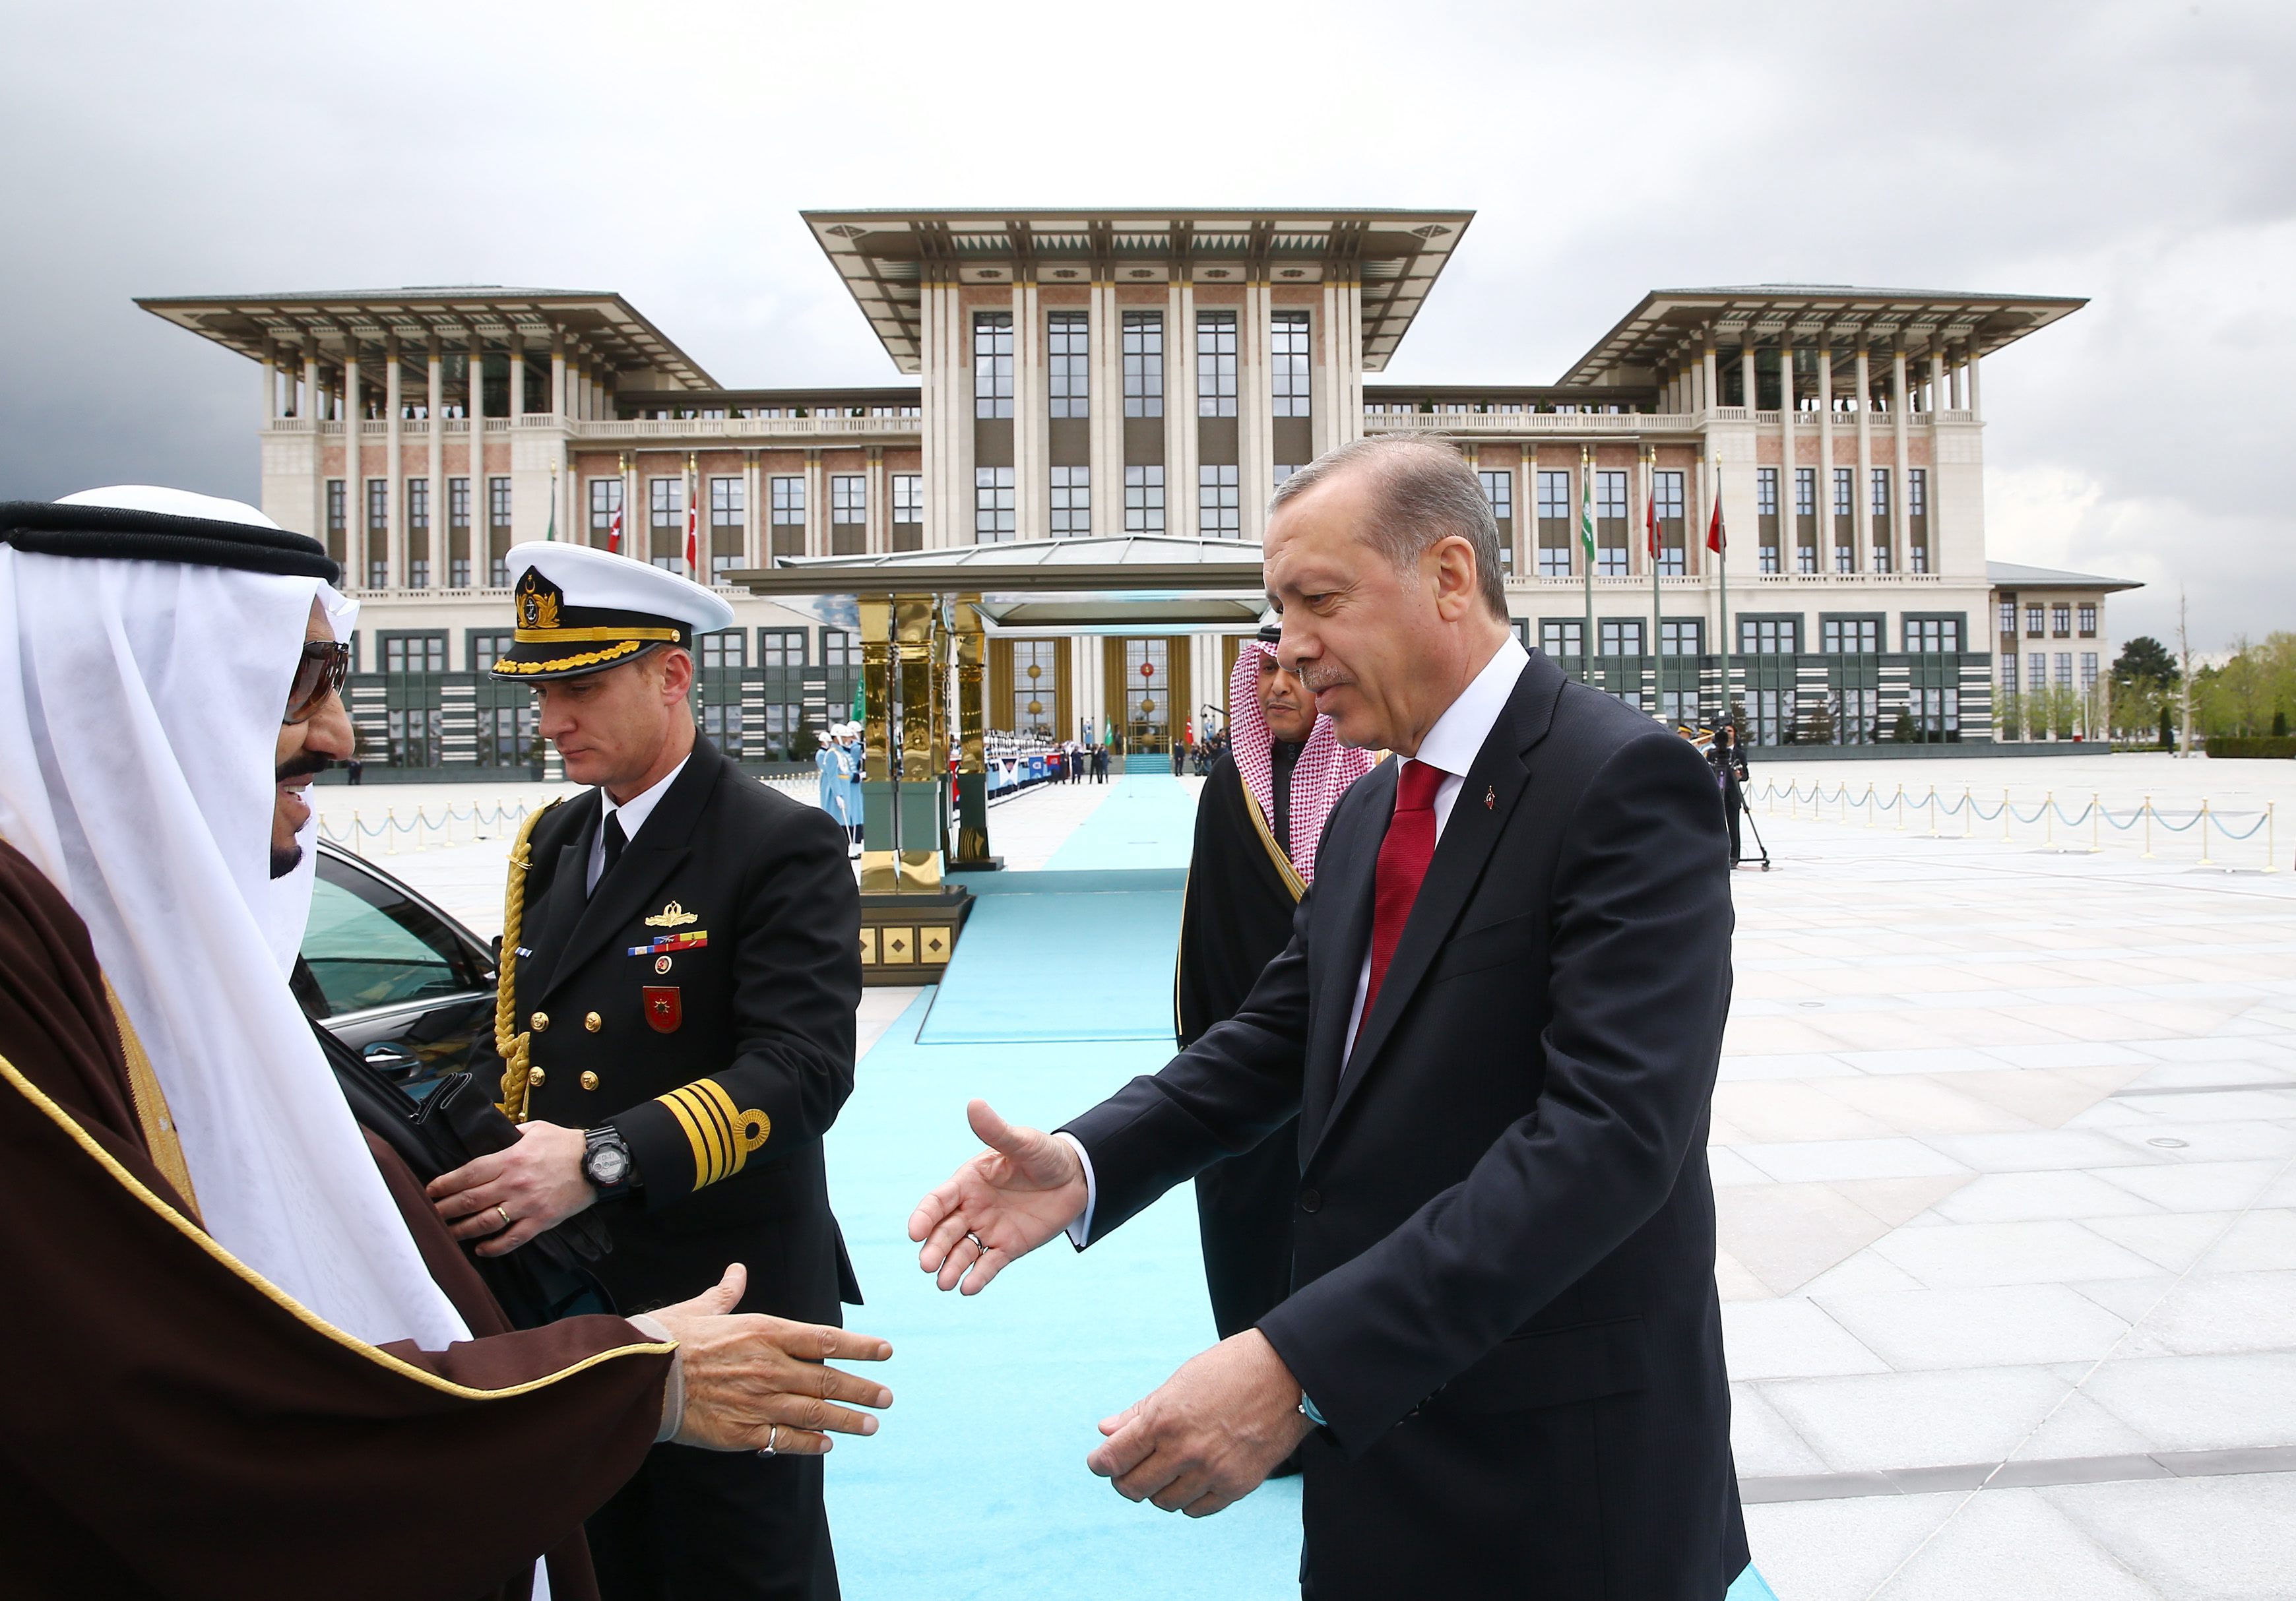 В страната, в която 2 милиона души живeят с по-малко от 4 евро на ден, дворецът на президента Реджеп Ердоган ще накара дори Саддам Хюсеин да се изчерви. С тези думи Дейли Мейл" публикува впечатляващи разкази за двореца на турския президент. Аксарай, или Белият дворец, се шири на 4 декара и само построяването му струва повече от 600 милиона евро